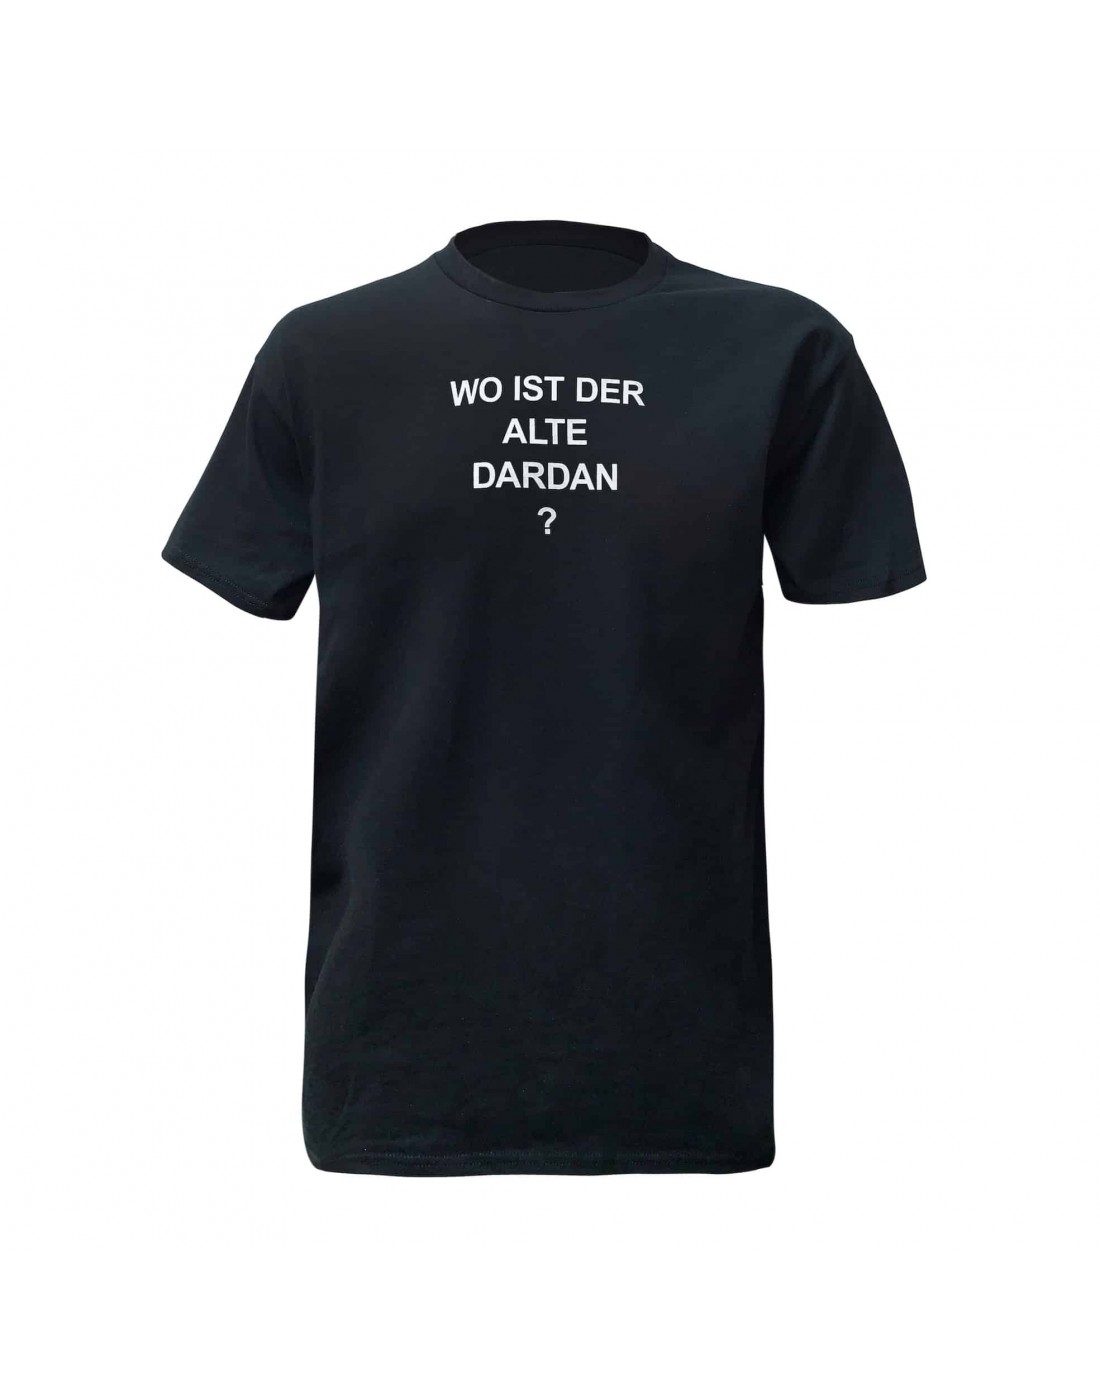 WO IST DER ALTE DARDAN T-Shirt